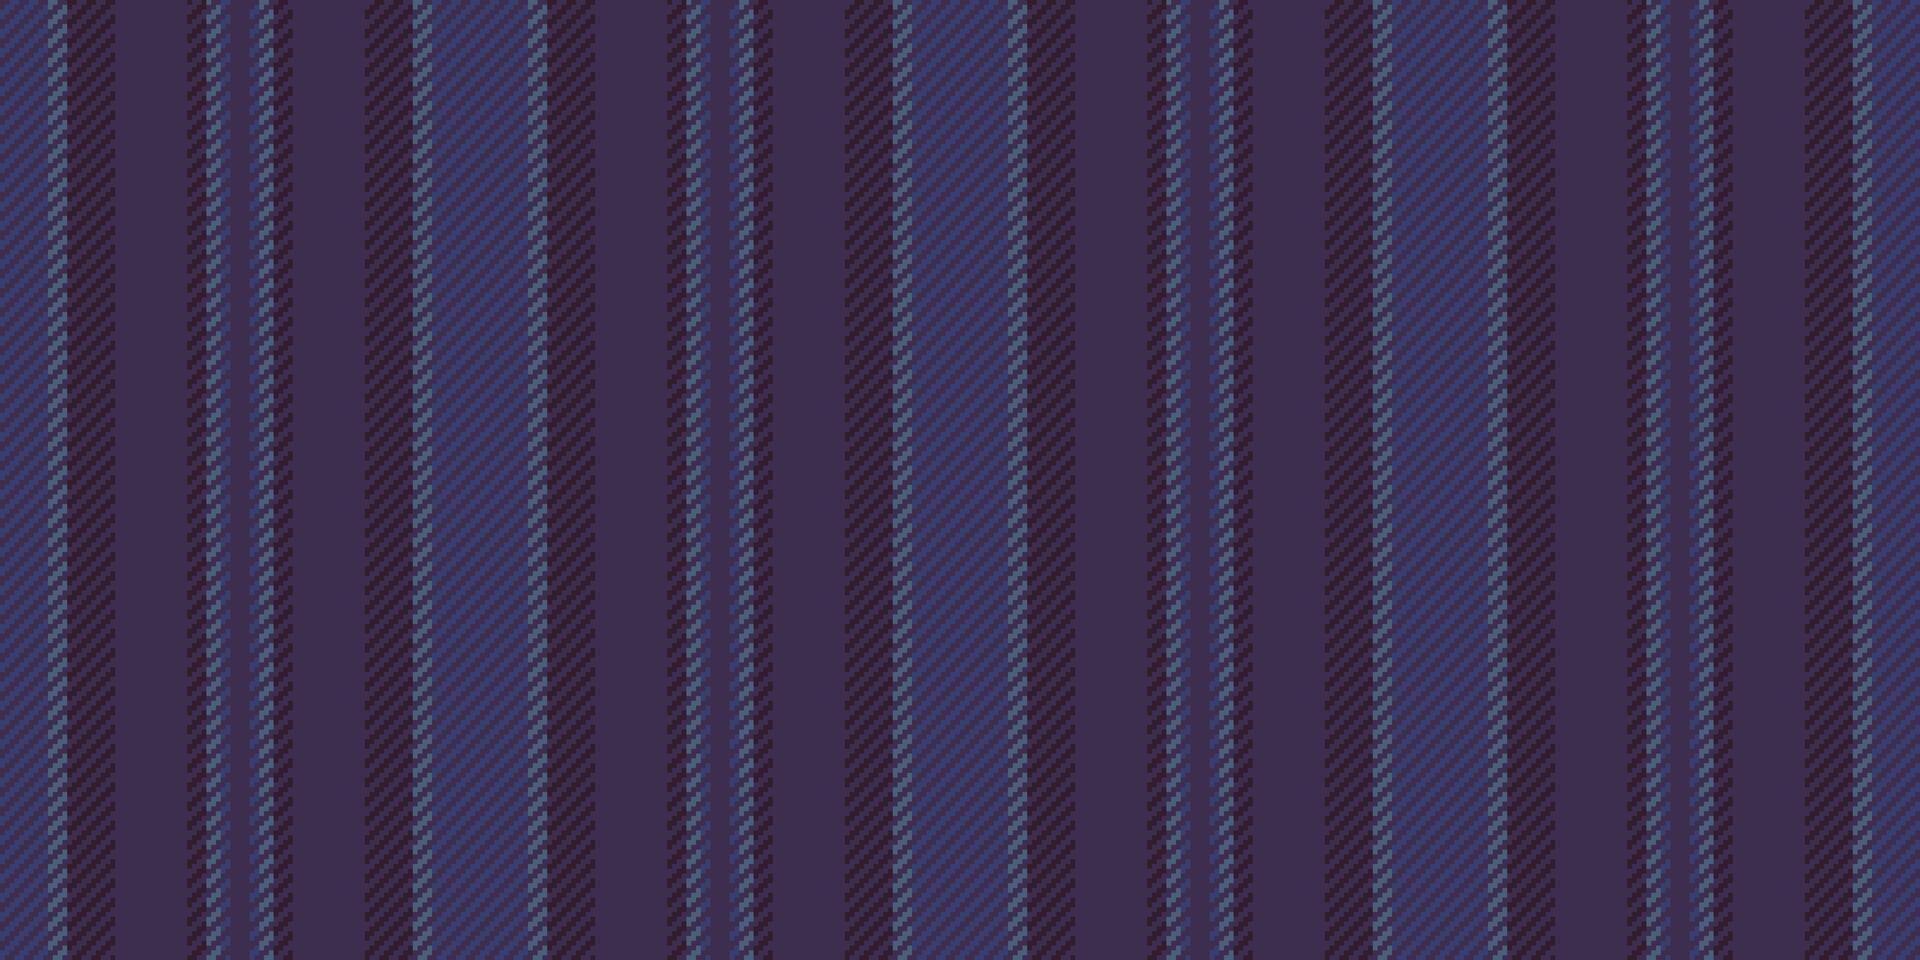 vezelig textiel kleding stof verticaal, dankzegging patroon achtergrond lijnen. oppervlakte streep vector structuur naadloos in paars en blauw kleuren.